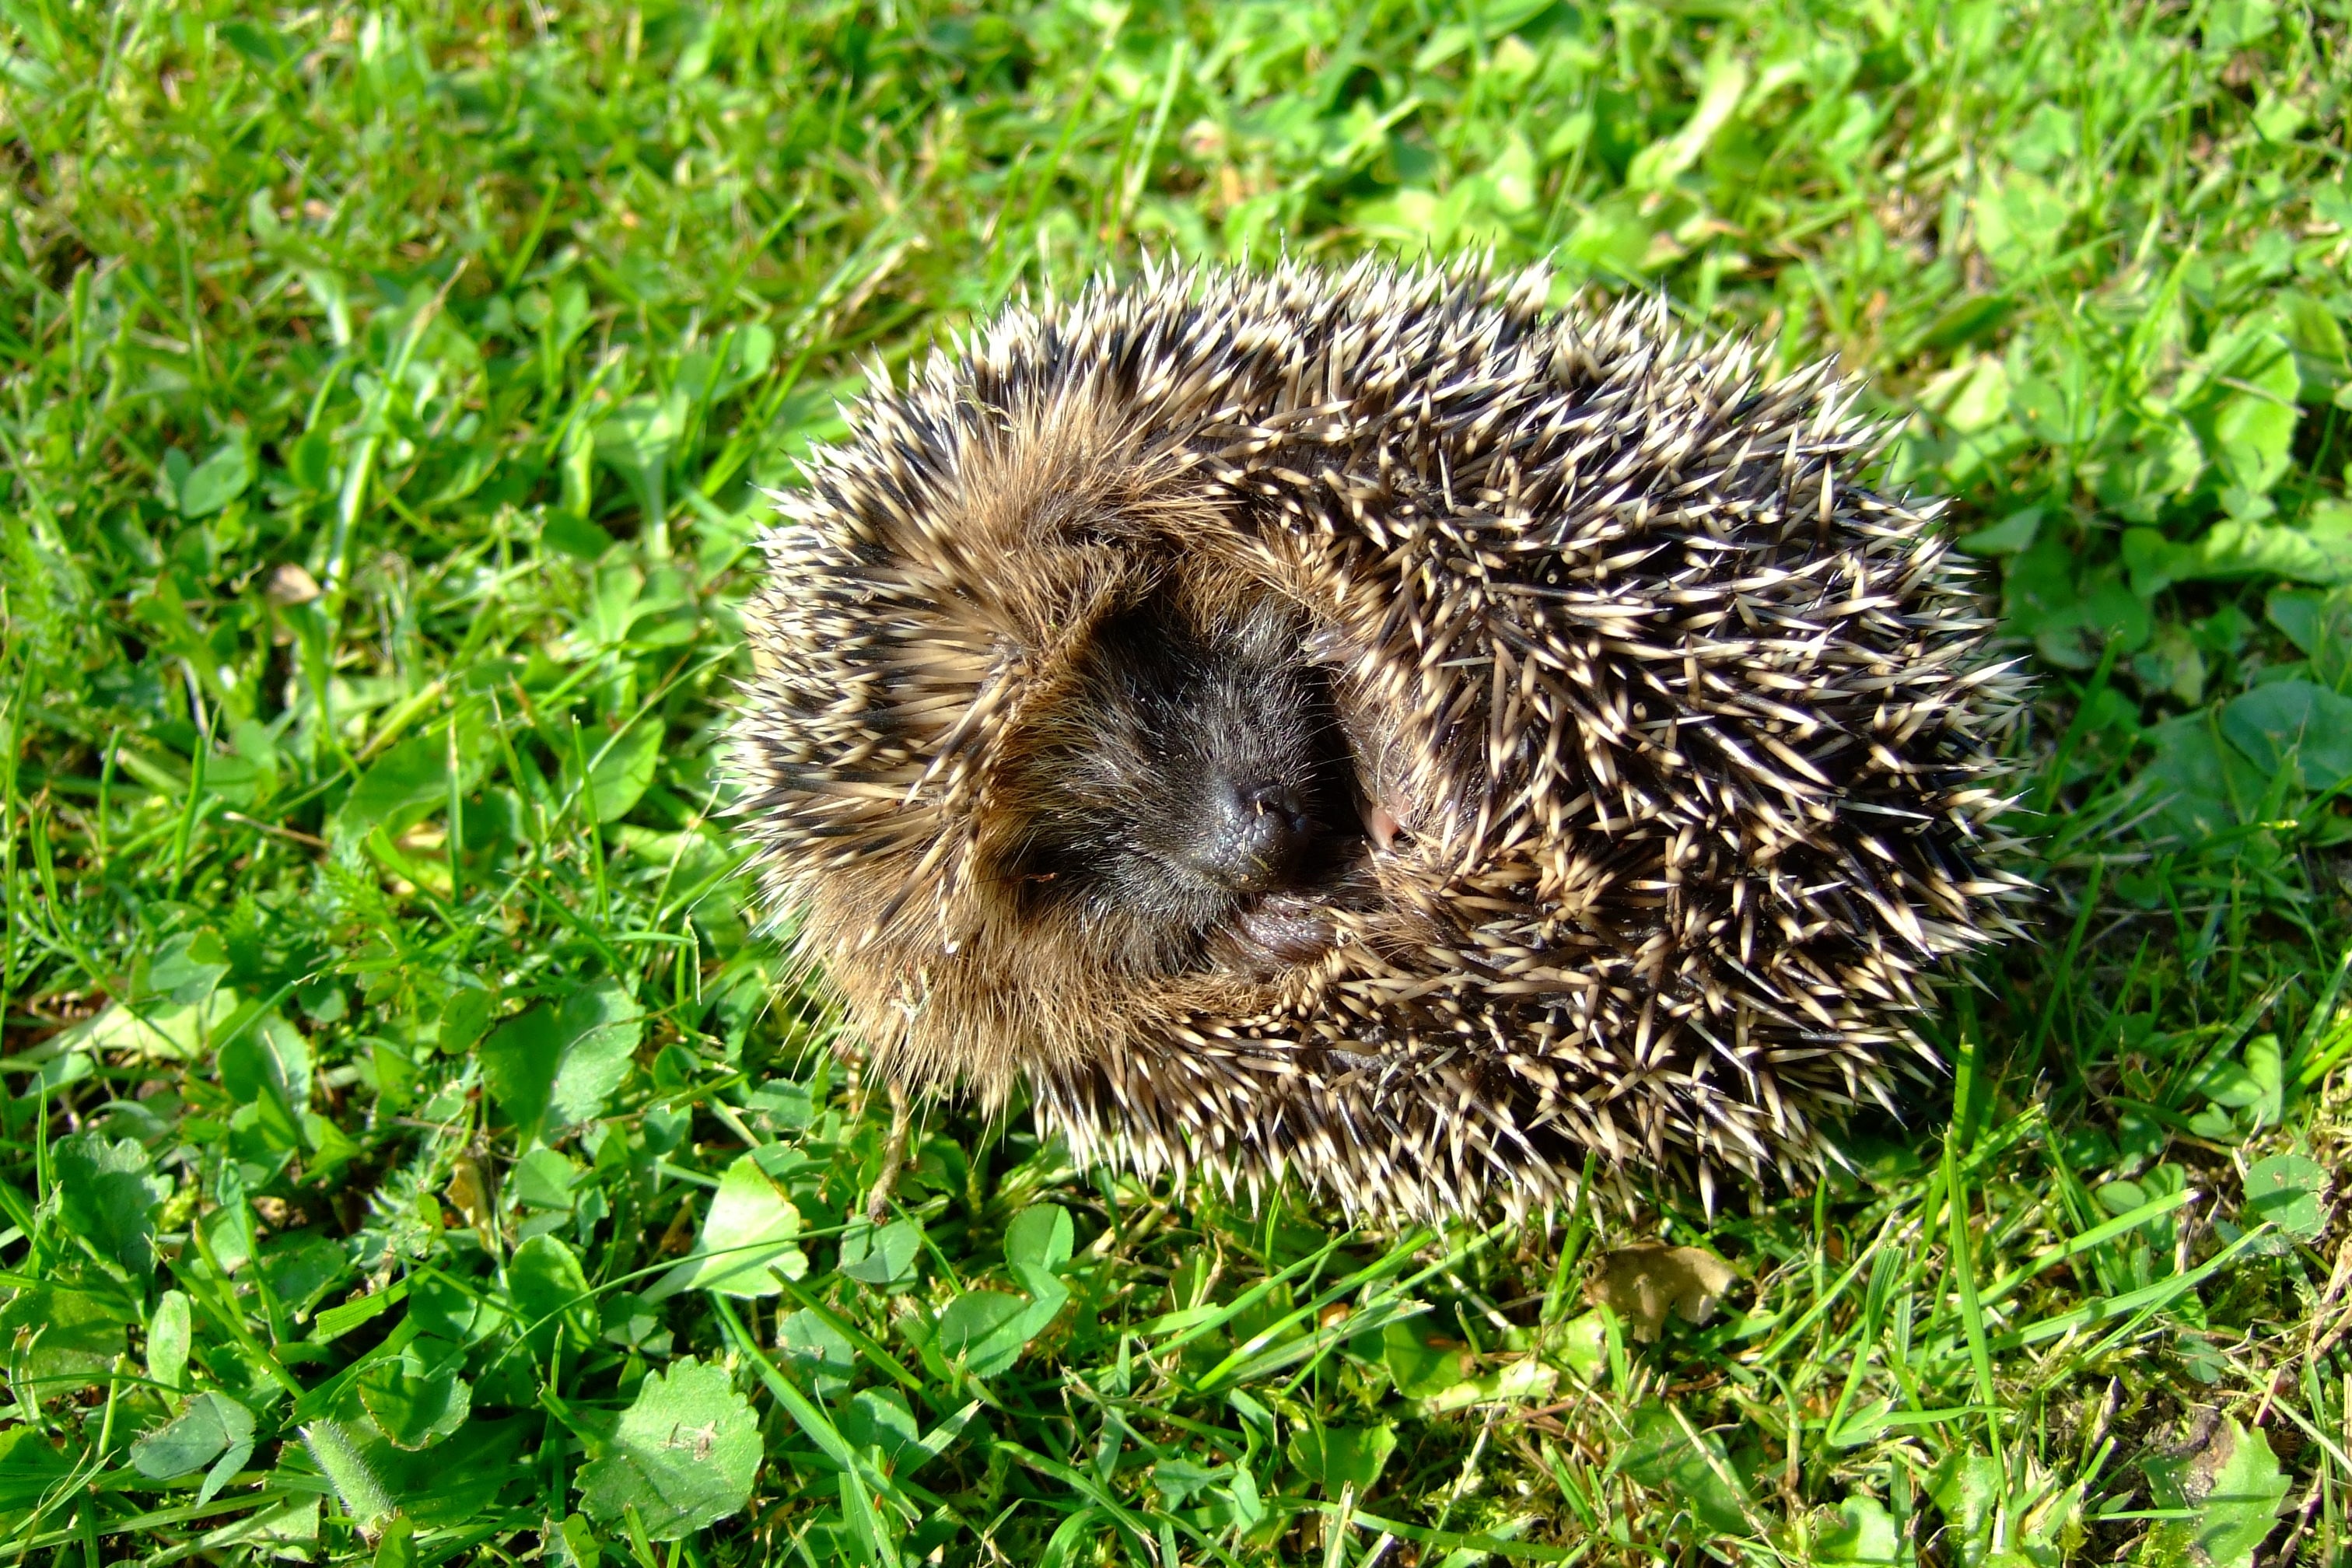 Rush, Nature, Cute, Prickly, Hedgehog, hedgehog, grass